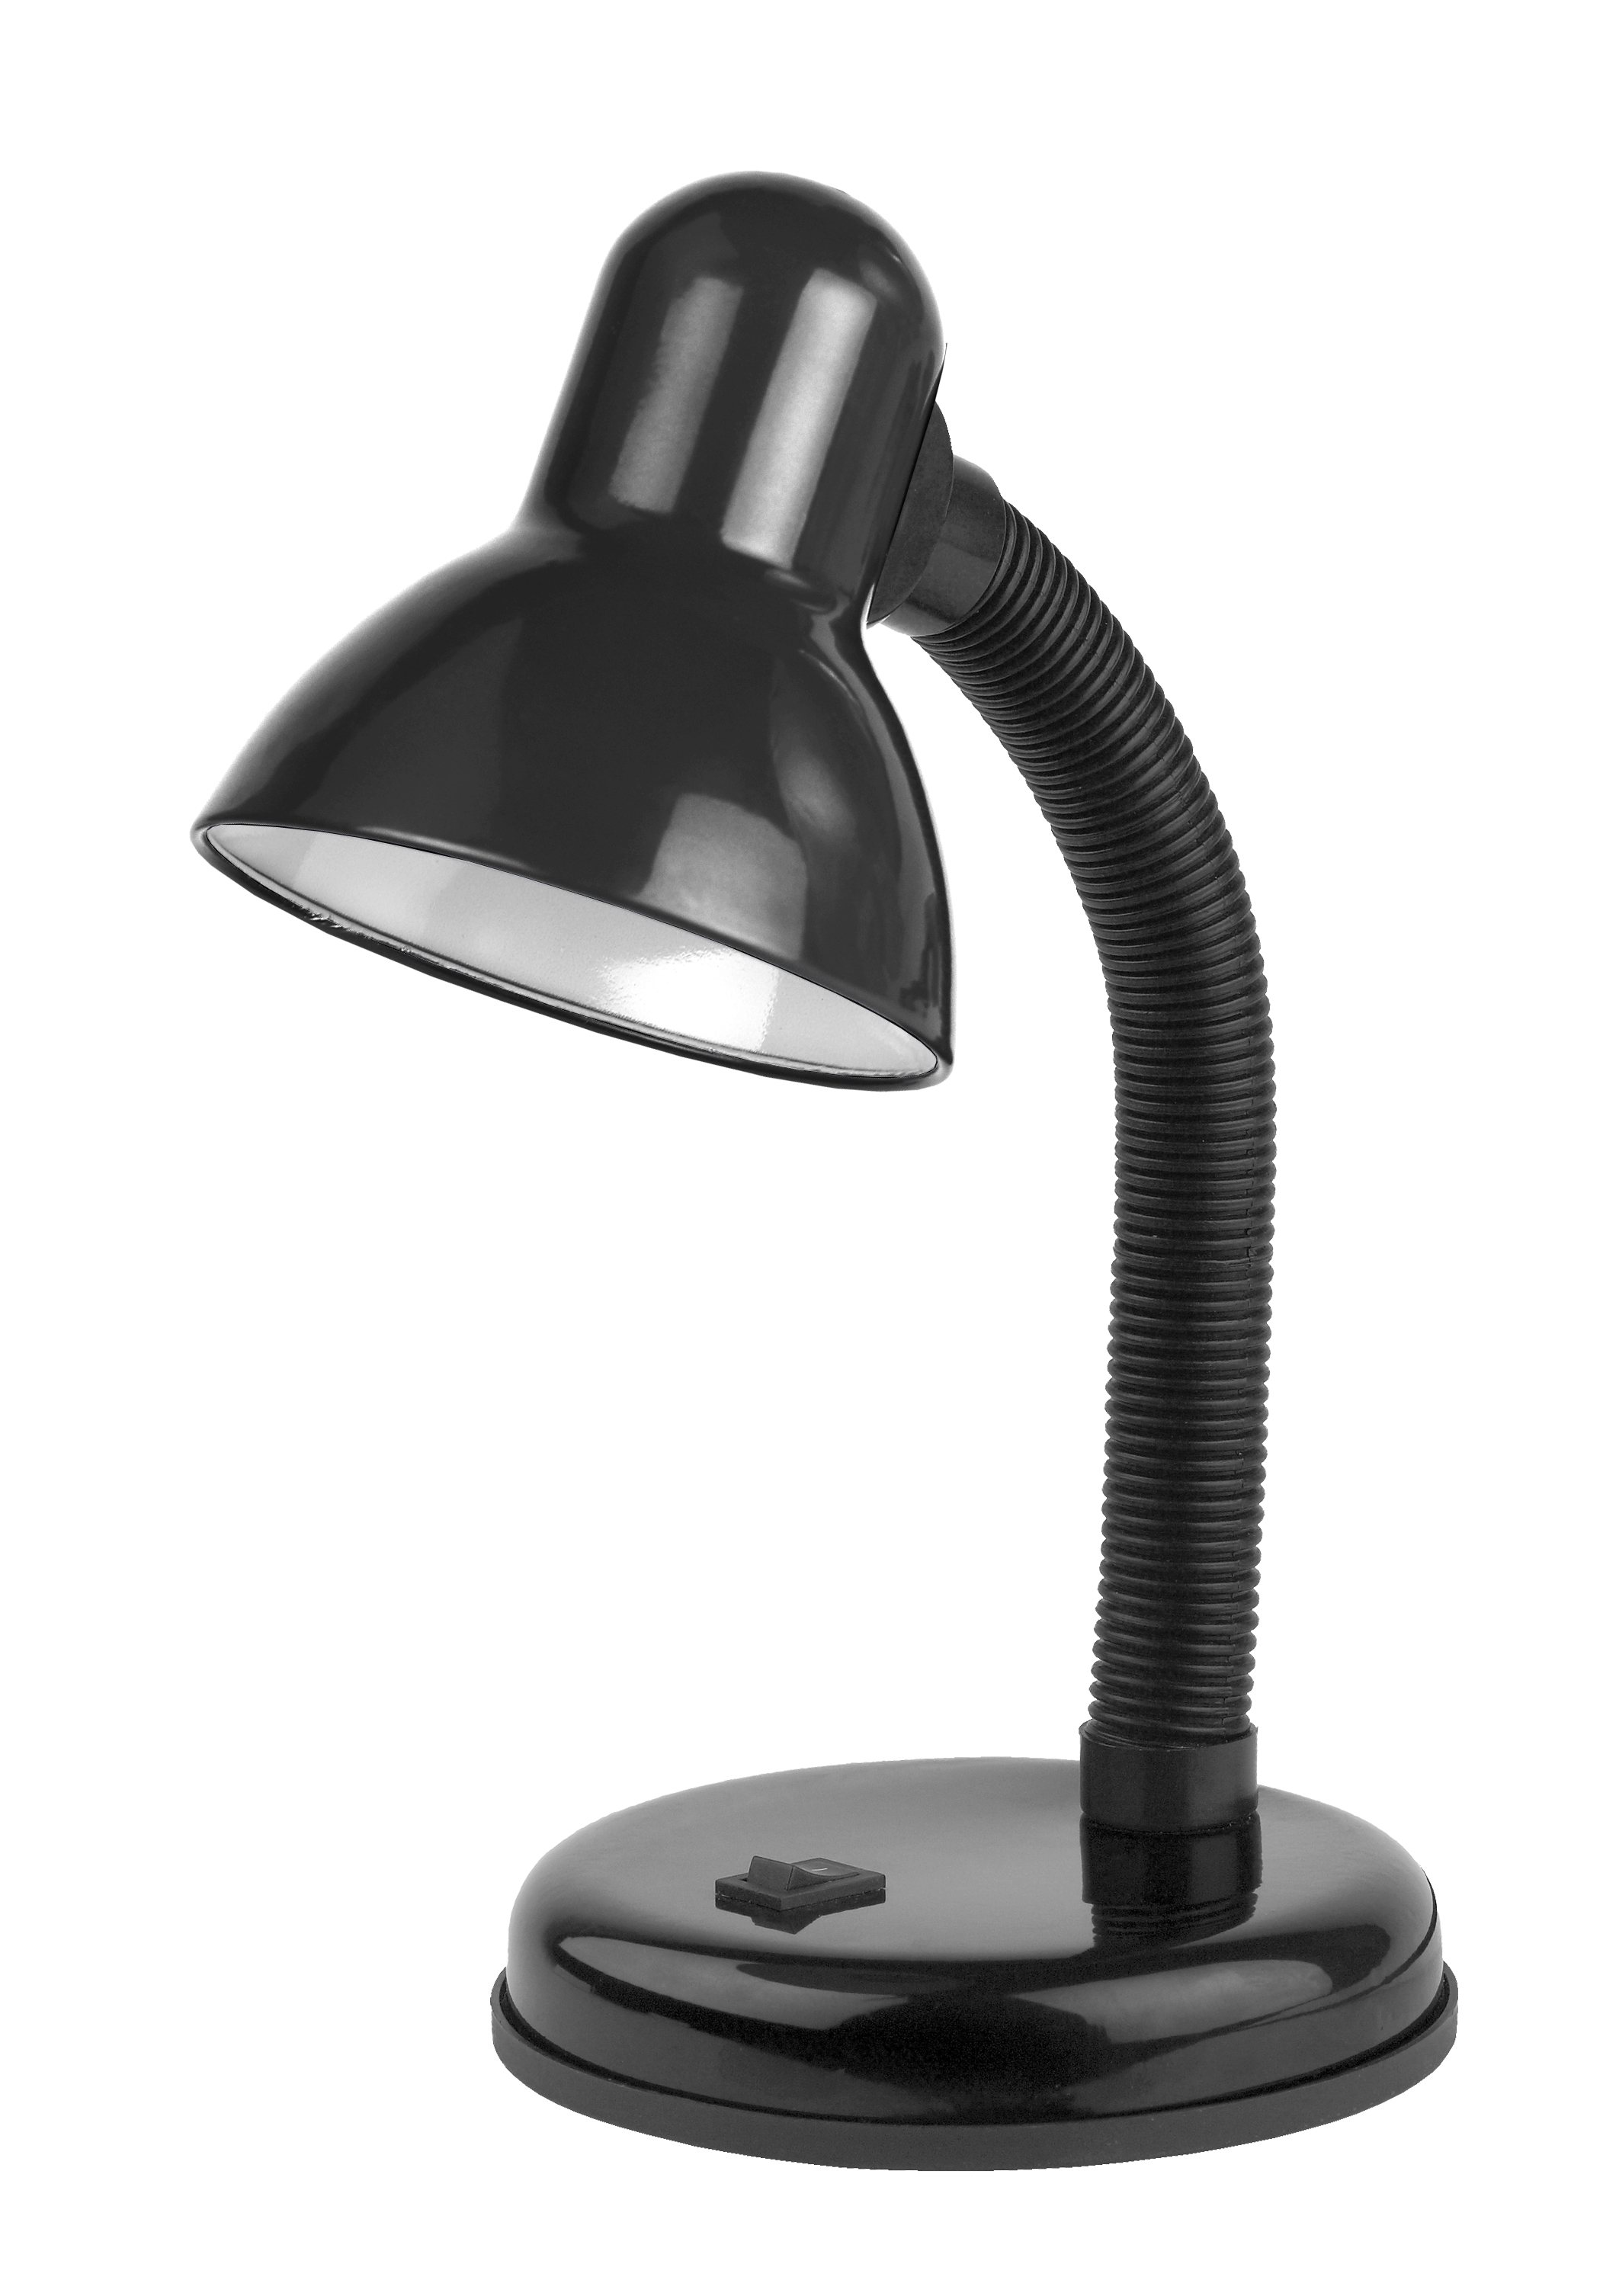 Настольный светильник ЭРА N-211-E27-40W-BK черный